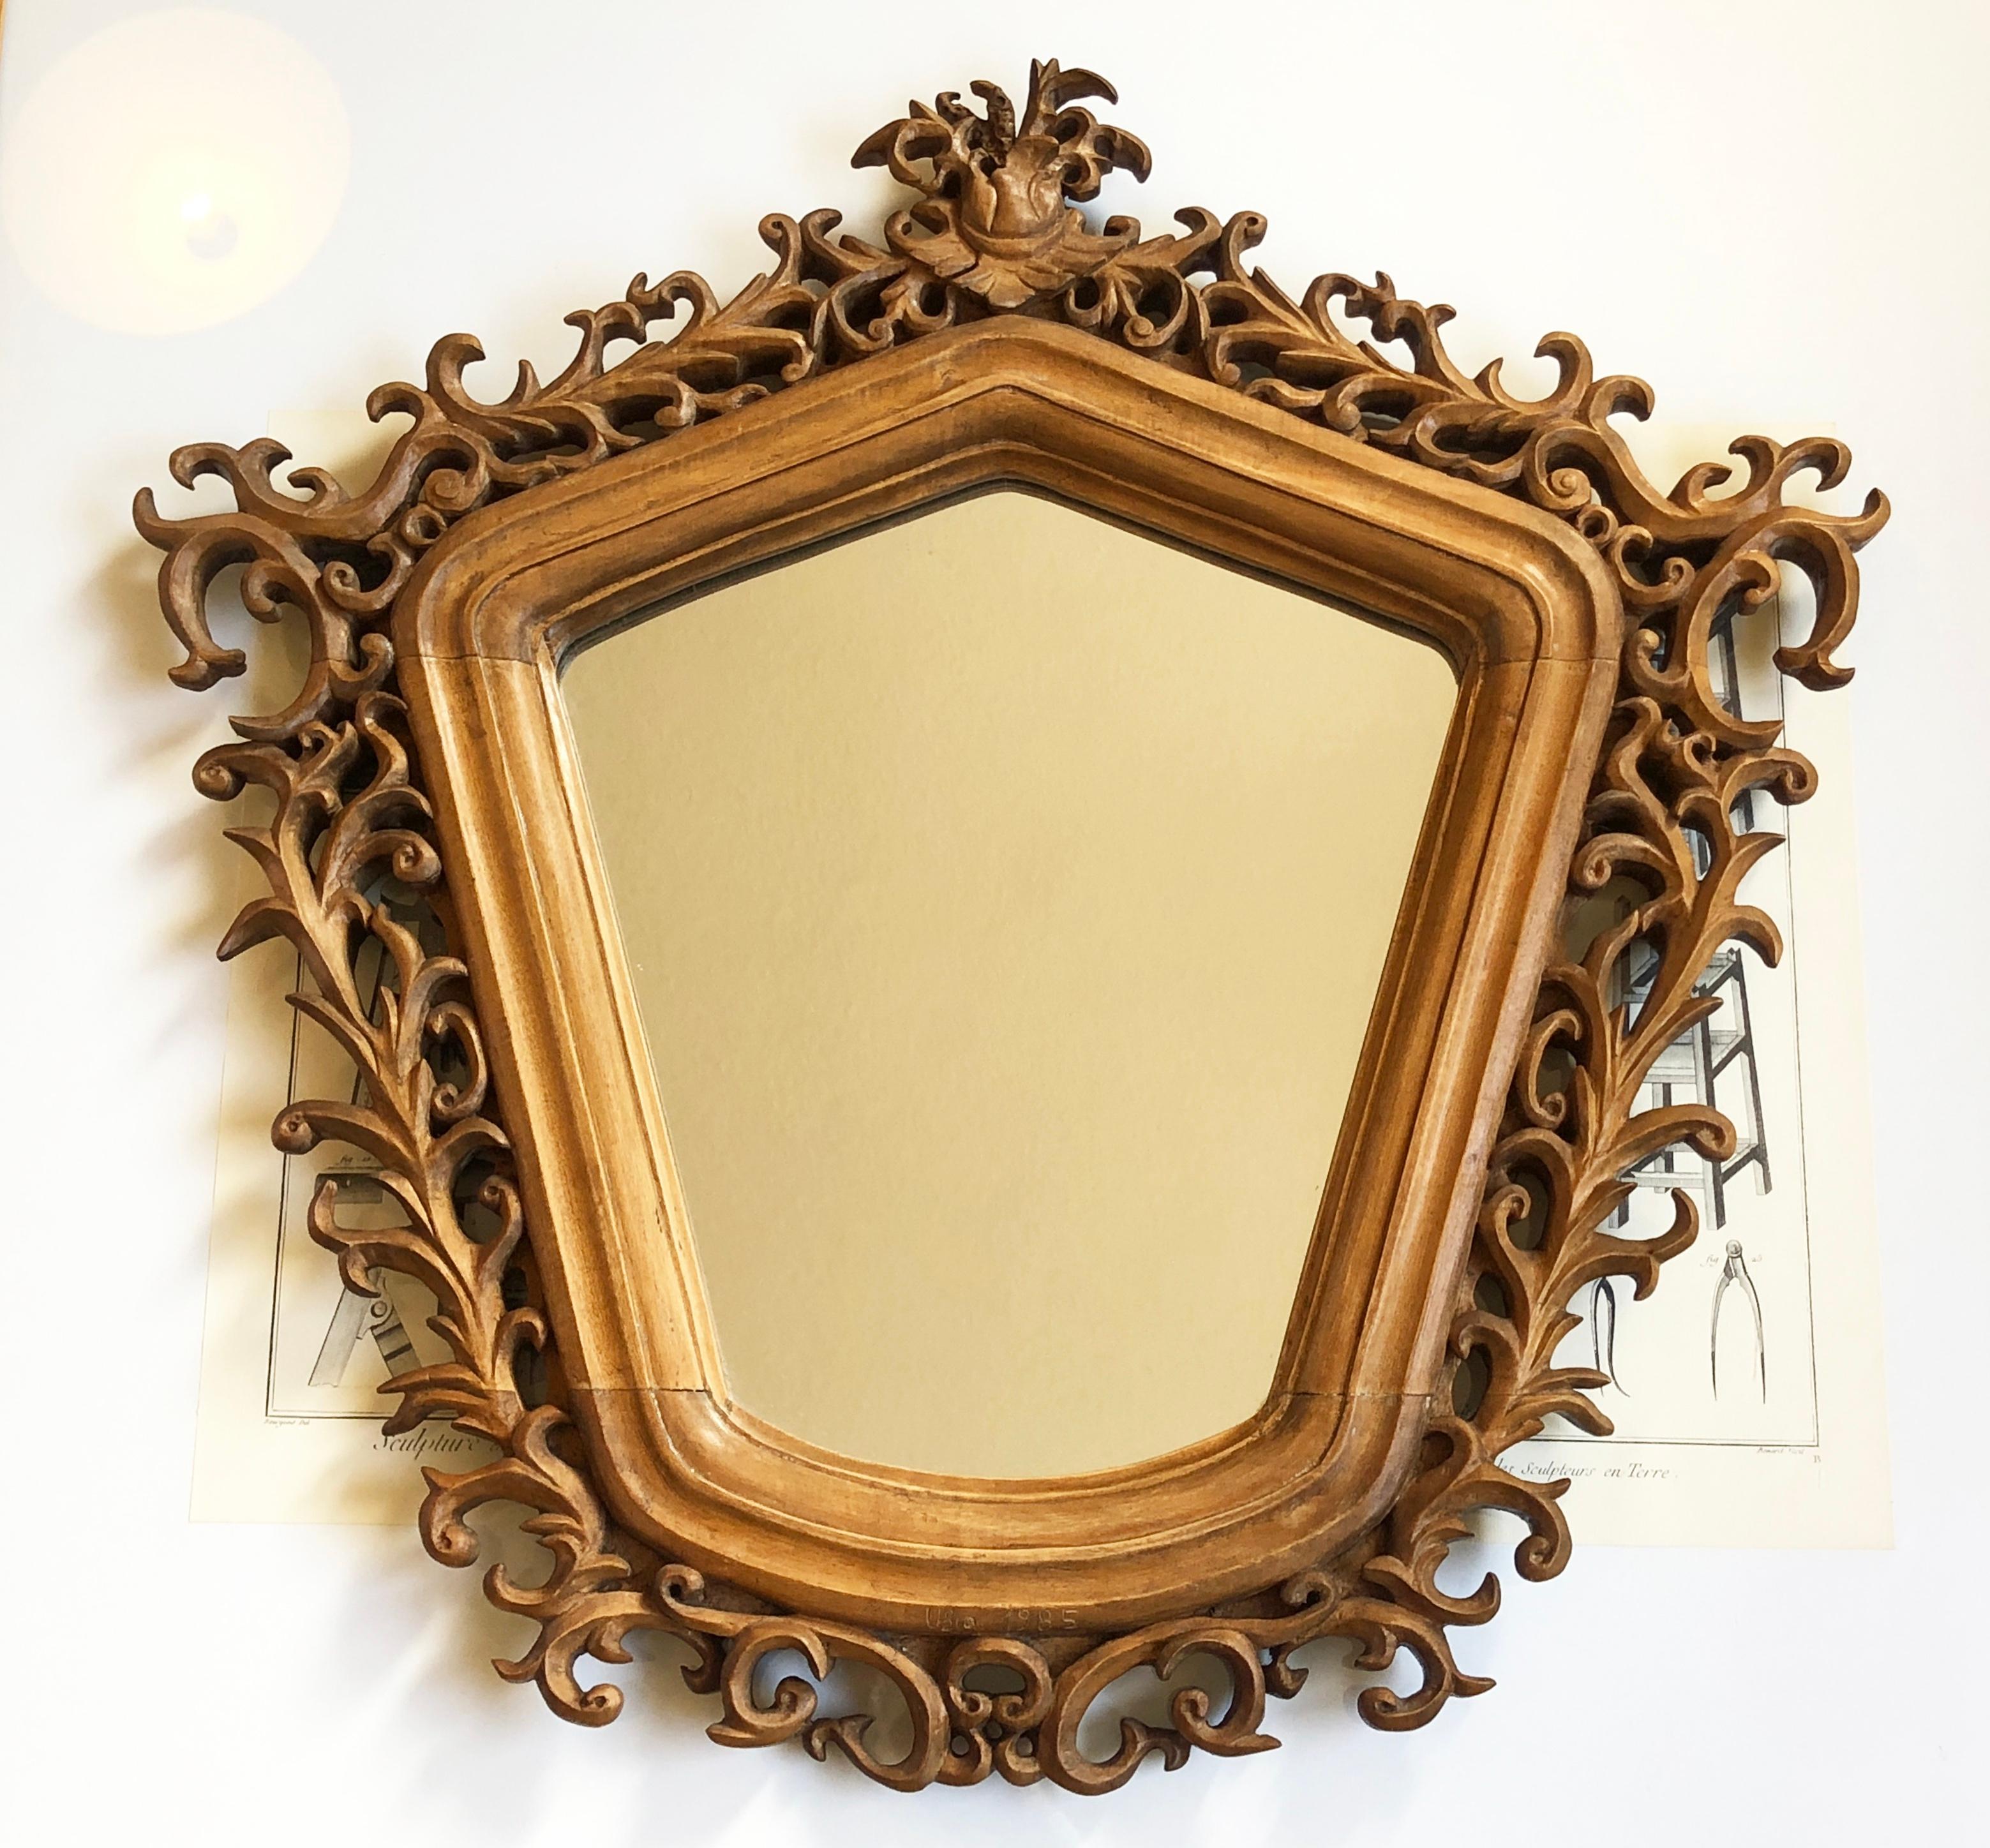 Merveilleuse rareté : miroir de forme unique, probablement fabriqué à la main en Italie.
Style baroque ou rococo, magnifique sculpture avec un symbolisme légèrement chevaleresque au sommet. 
Année et nom grossièrement encochés en dessous : Ubro